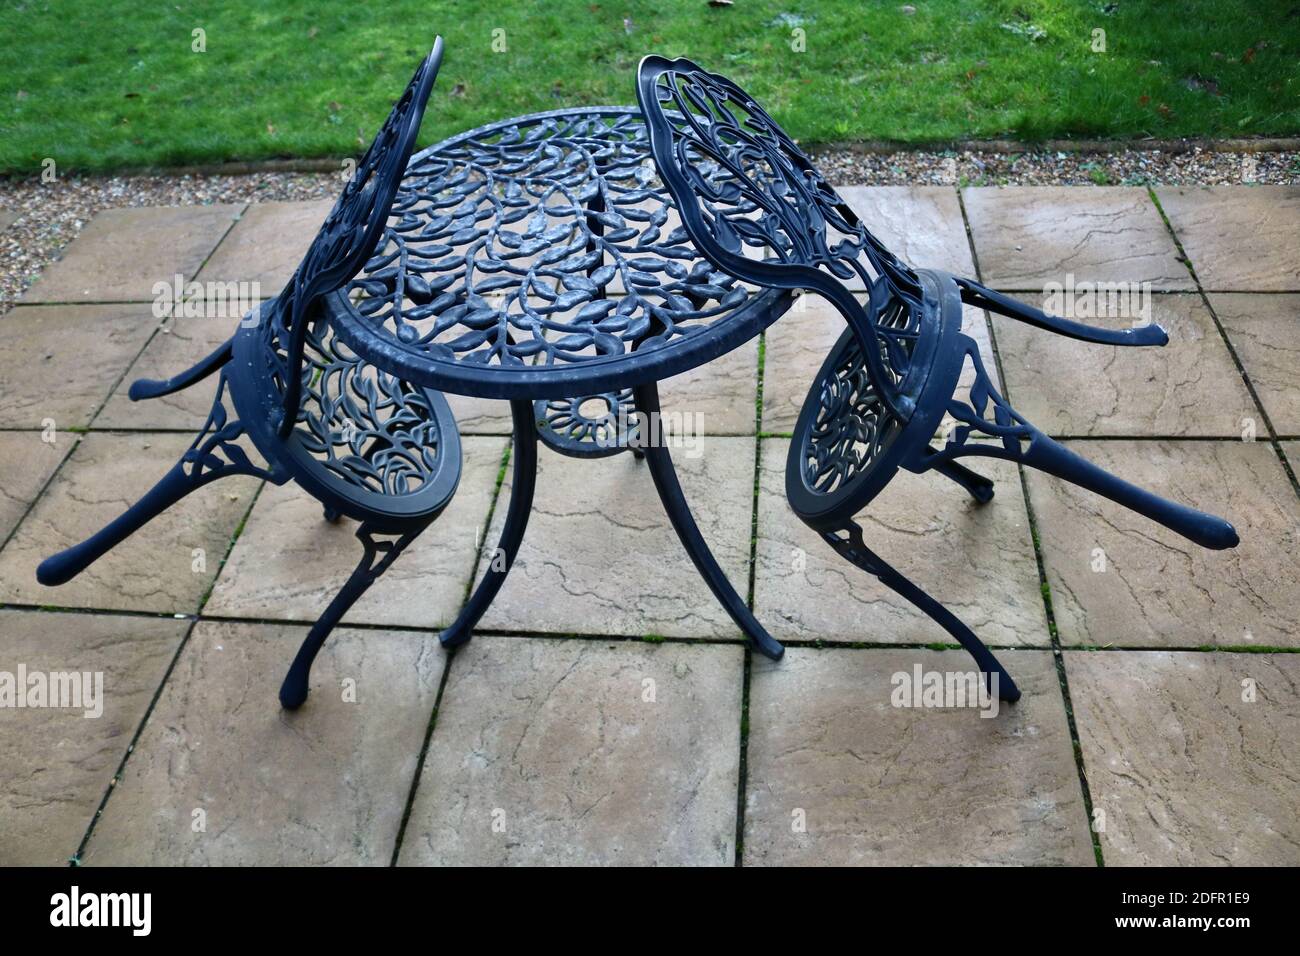 7 de noviembre de 2020 - Londres, Reino Unido: Dos sillas de jardín descansando sobre una mesa a juego Foto de stock